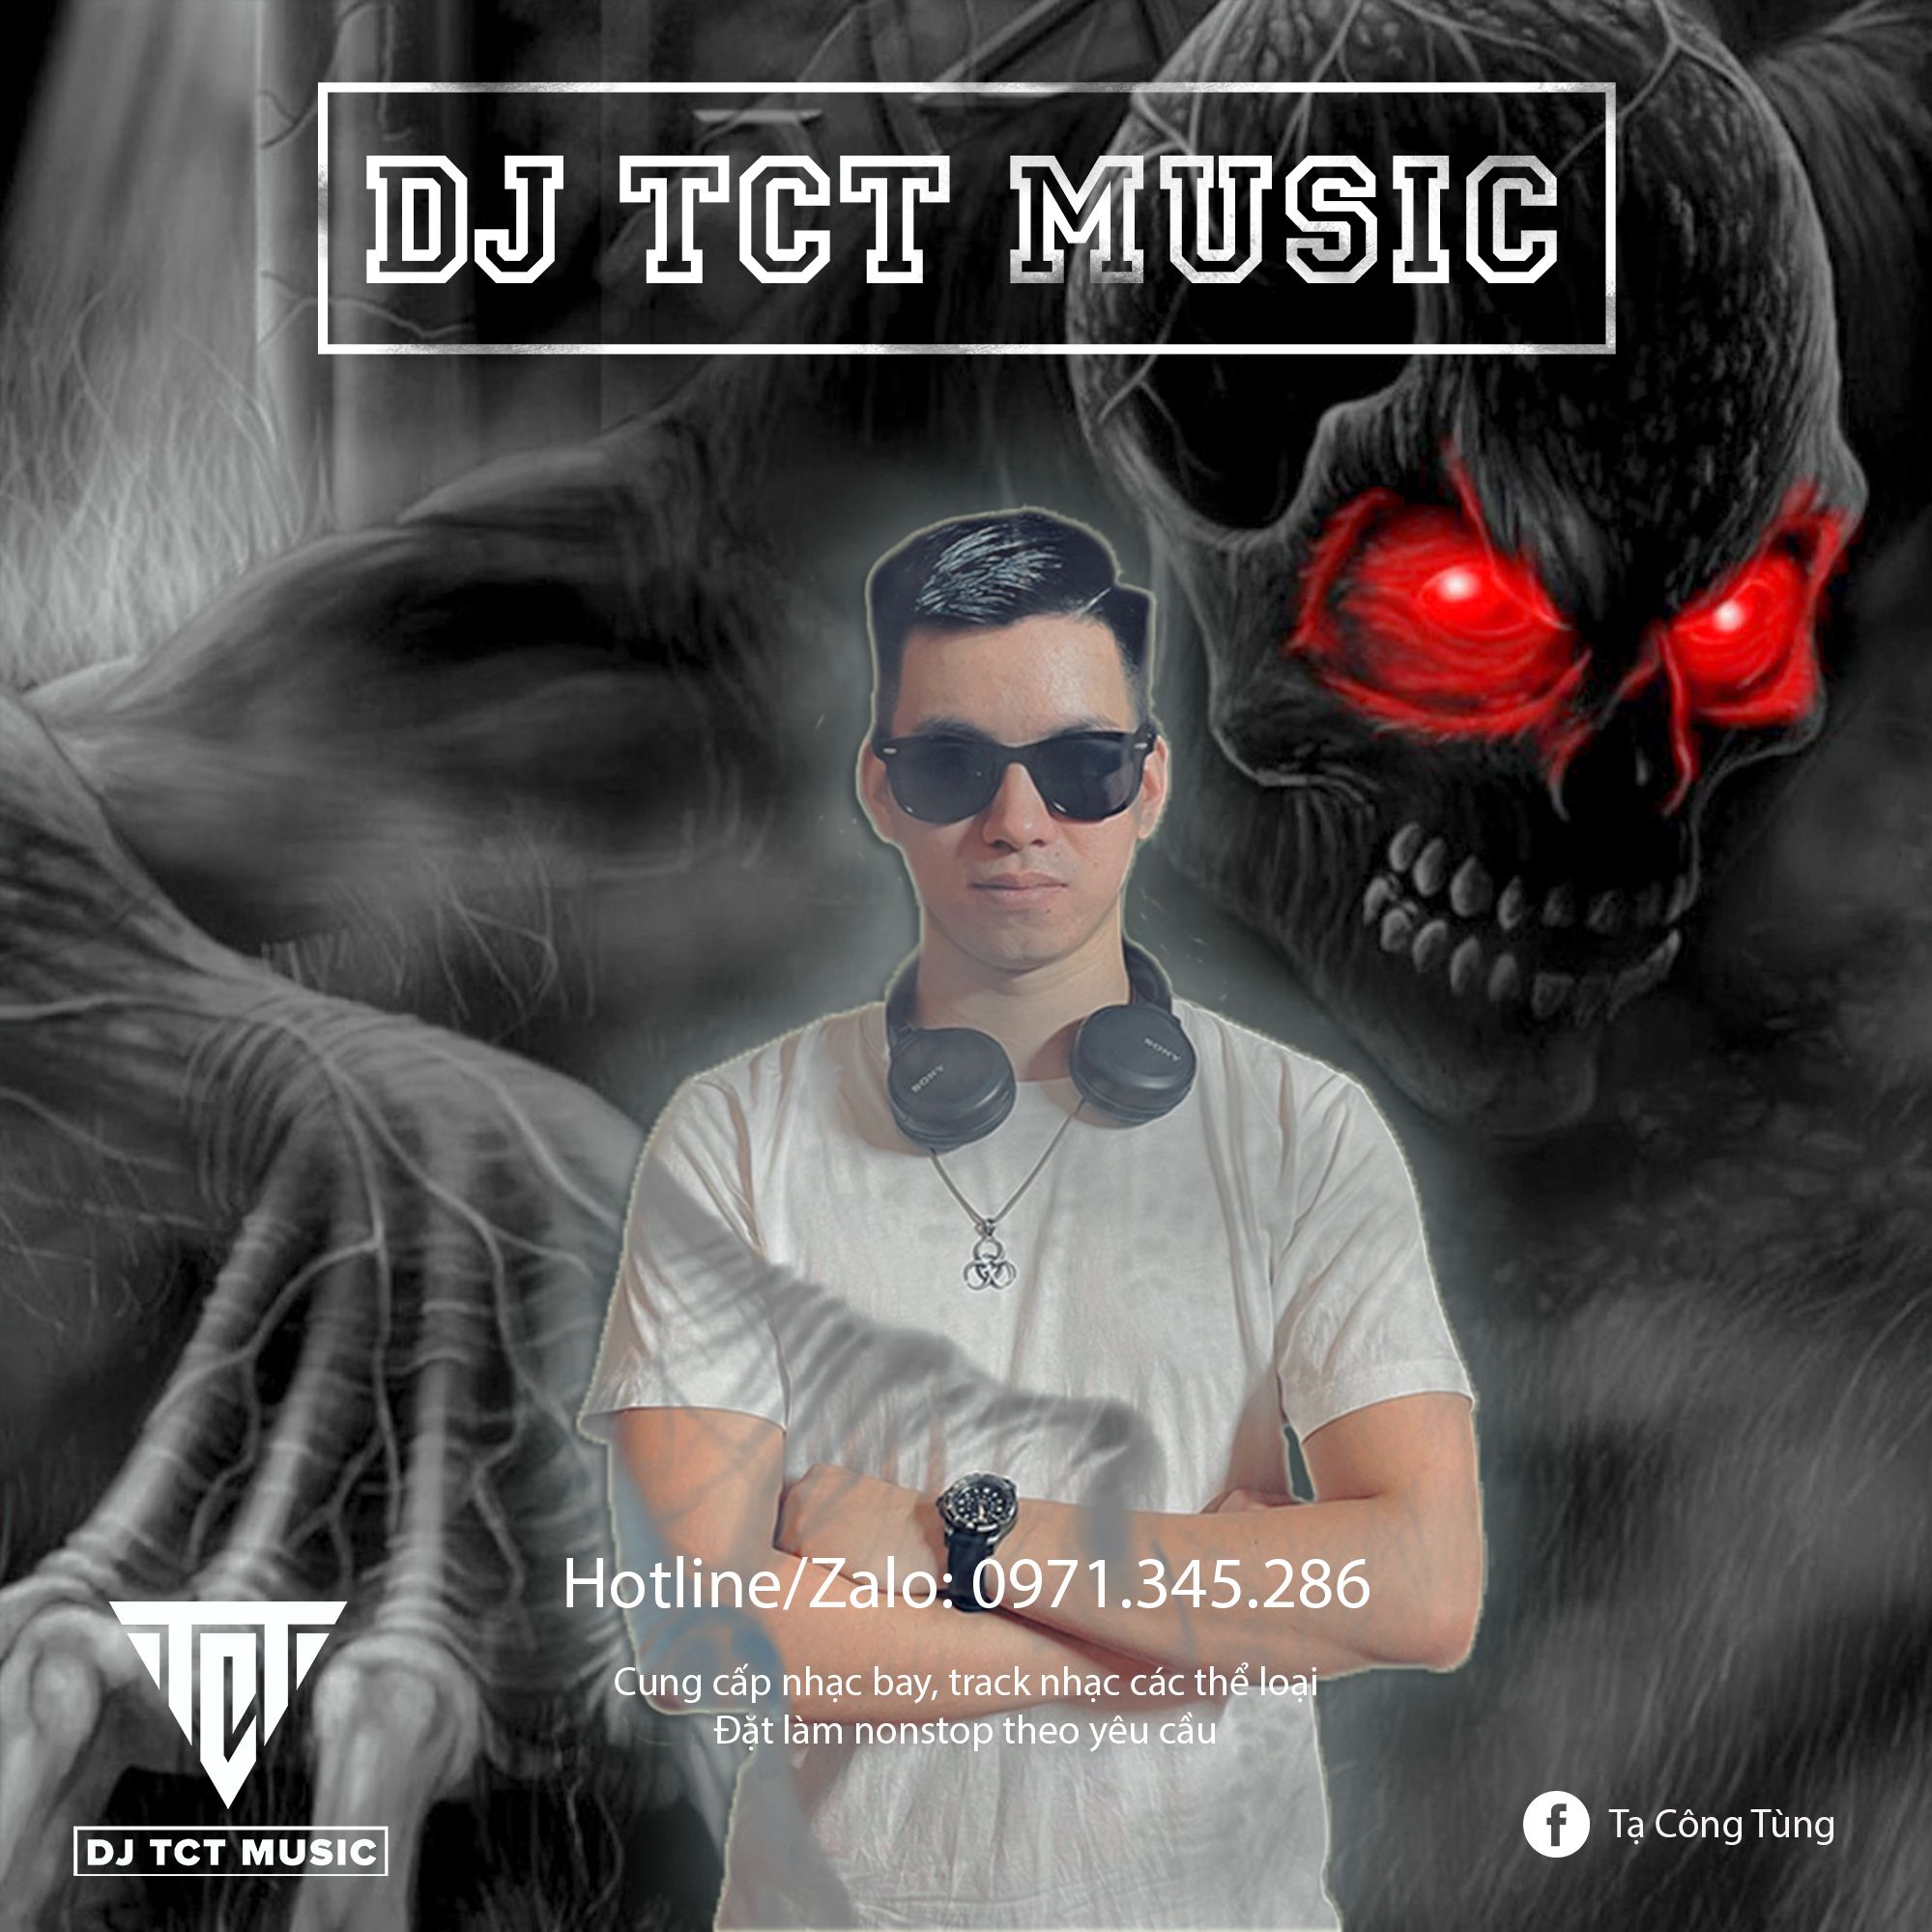 ډاونلوډ NONSTOP VIỆT MIX LỜI NGUYỀN 2022 .WAV / DJ TCT MUSIC 0971345286 / TRACK NHẠC BAY PHÒNG HAY NHẤT 2022